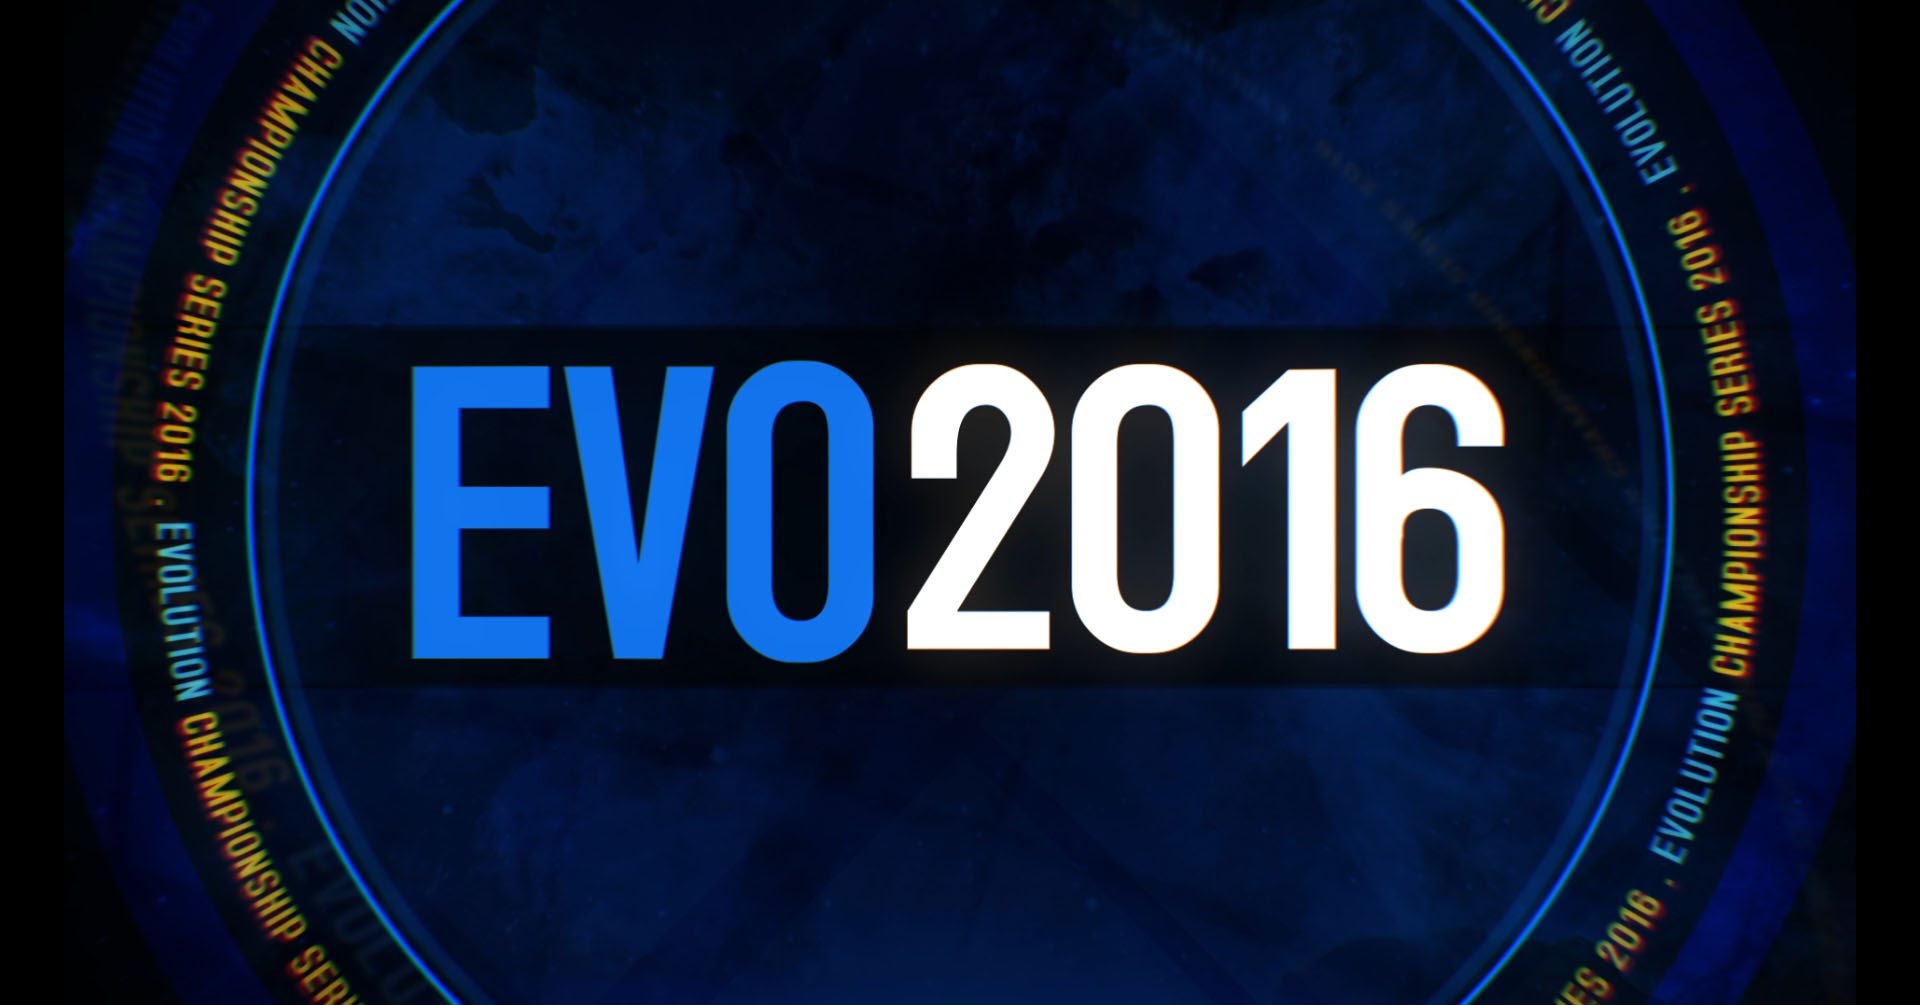 EVO 2016 logo